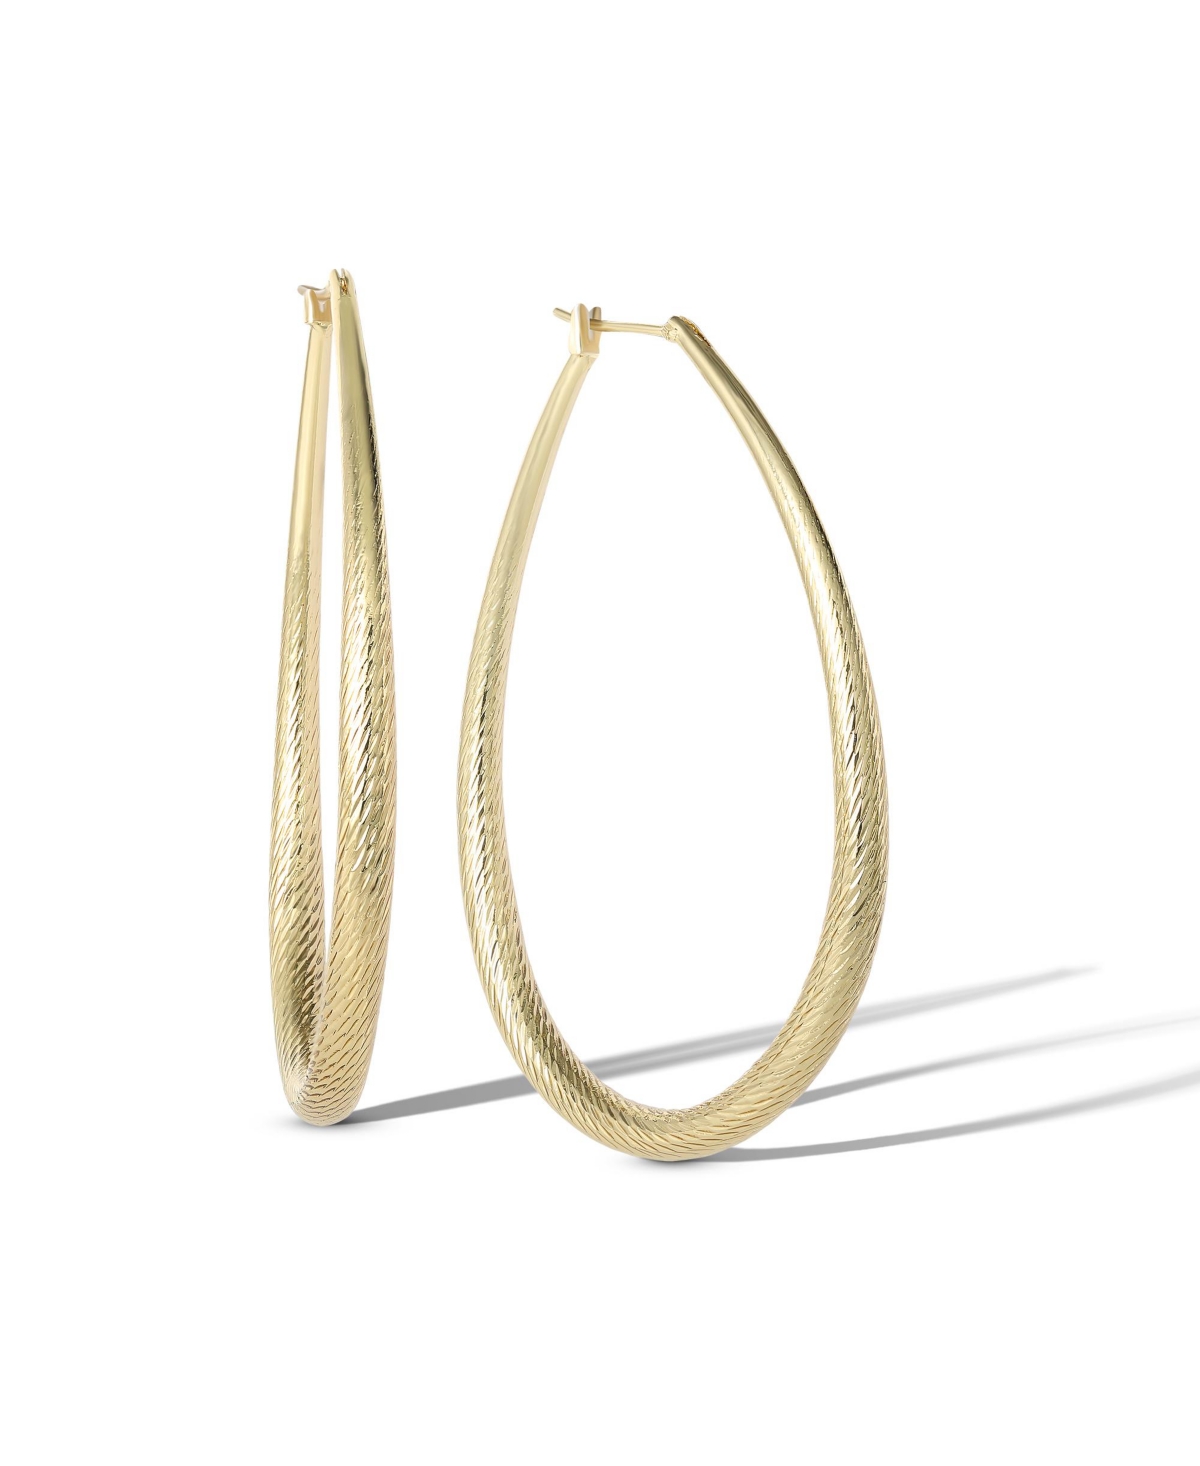 Womens Oval Textured Hoop Earrings - Gold or Silver-Tone Large Hoop Earrings - Gold